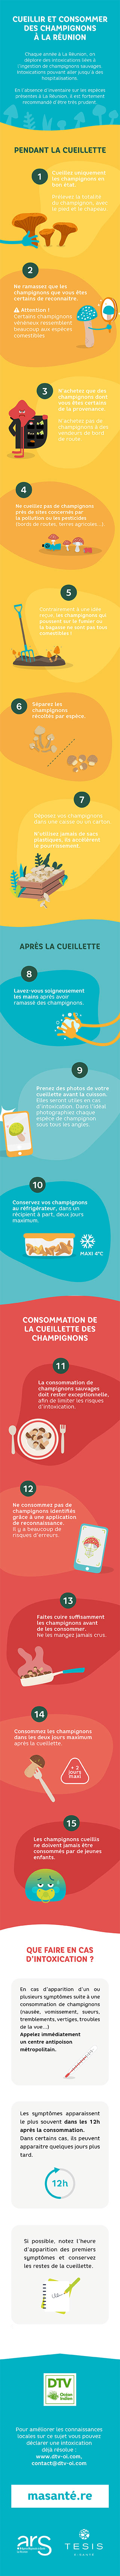 Infographie Champignons Sauvages à la Réunion. Cueillette et consommation